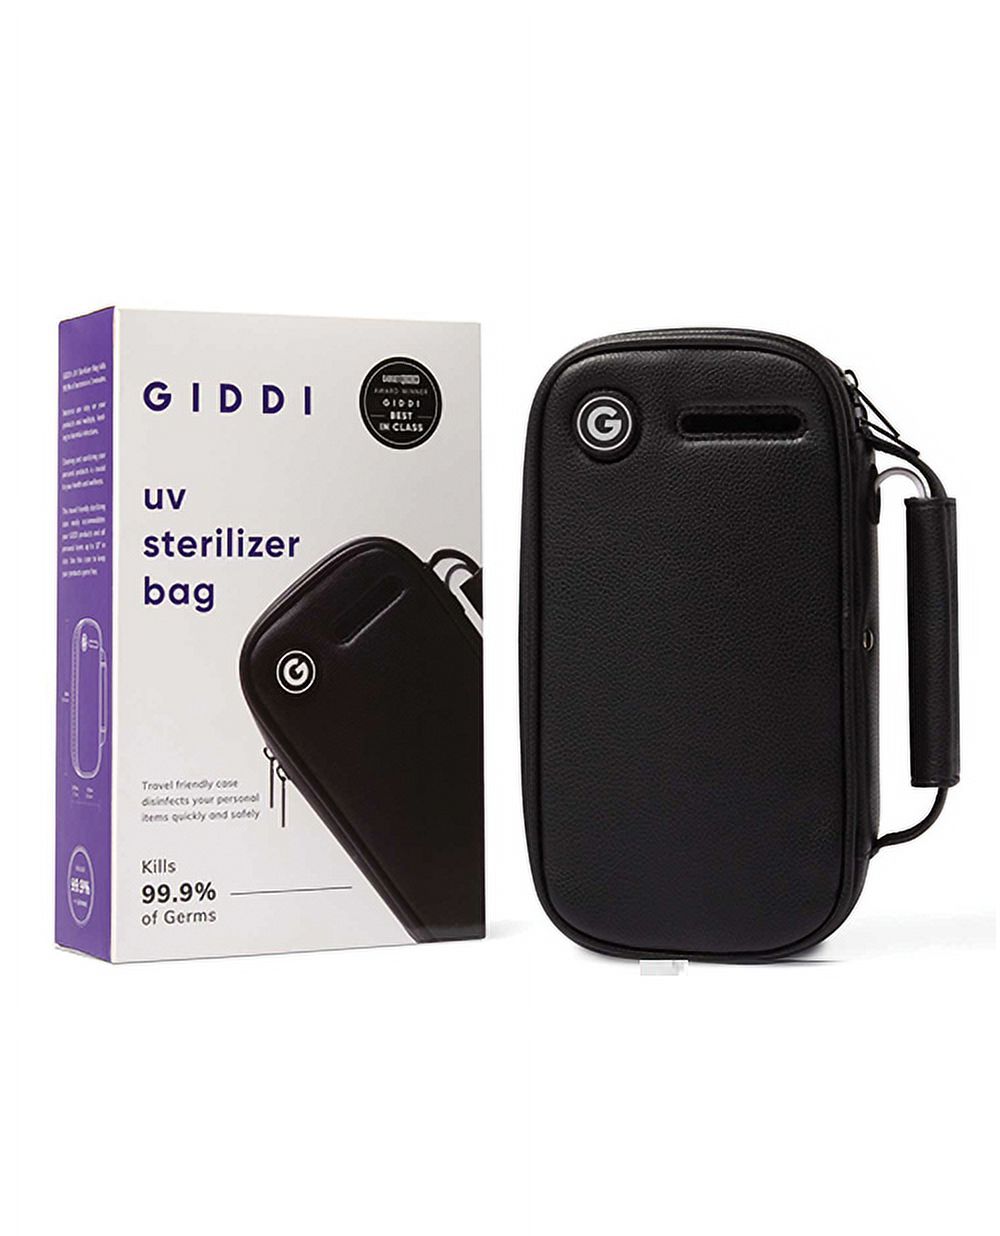 Giddi UV Sterilizer Bag - Black - image 1 of 1